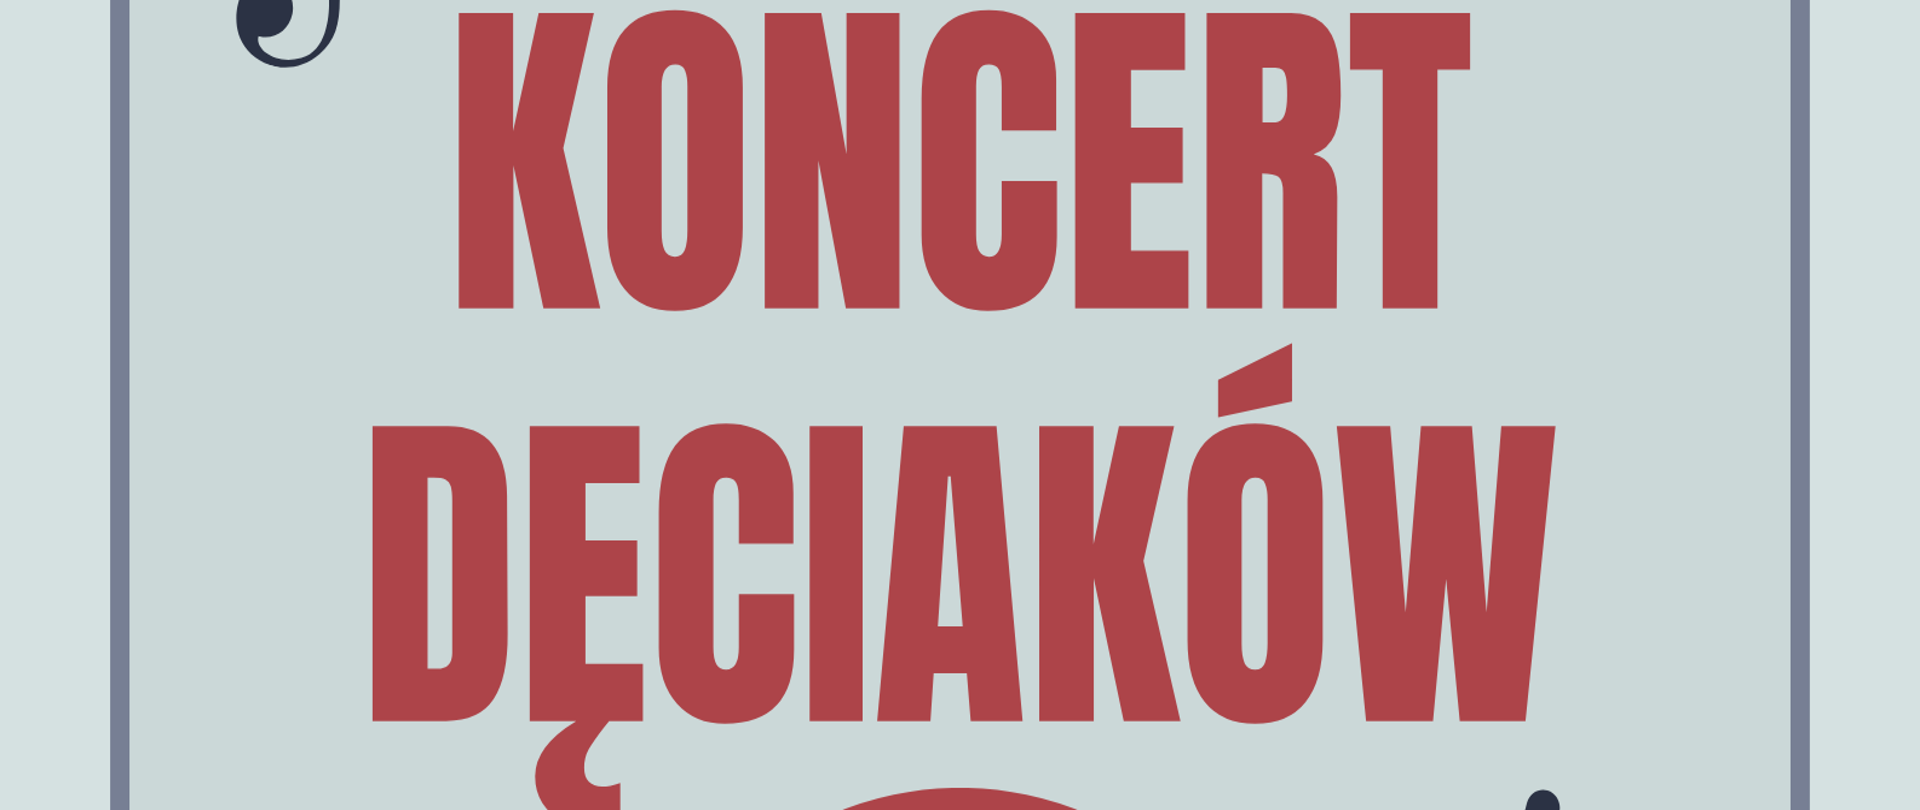 Sekcja Instrumentów Dętych zaprasza na Koncert Dęciaków, 15 maja godz. 17.00, Sala koncertowa II piętro